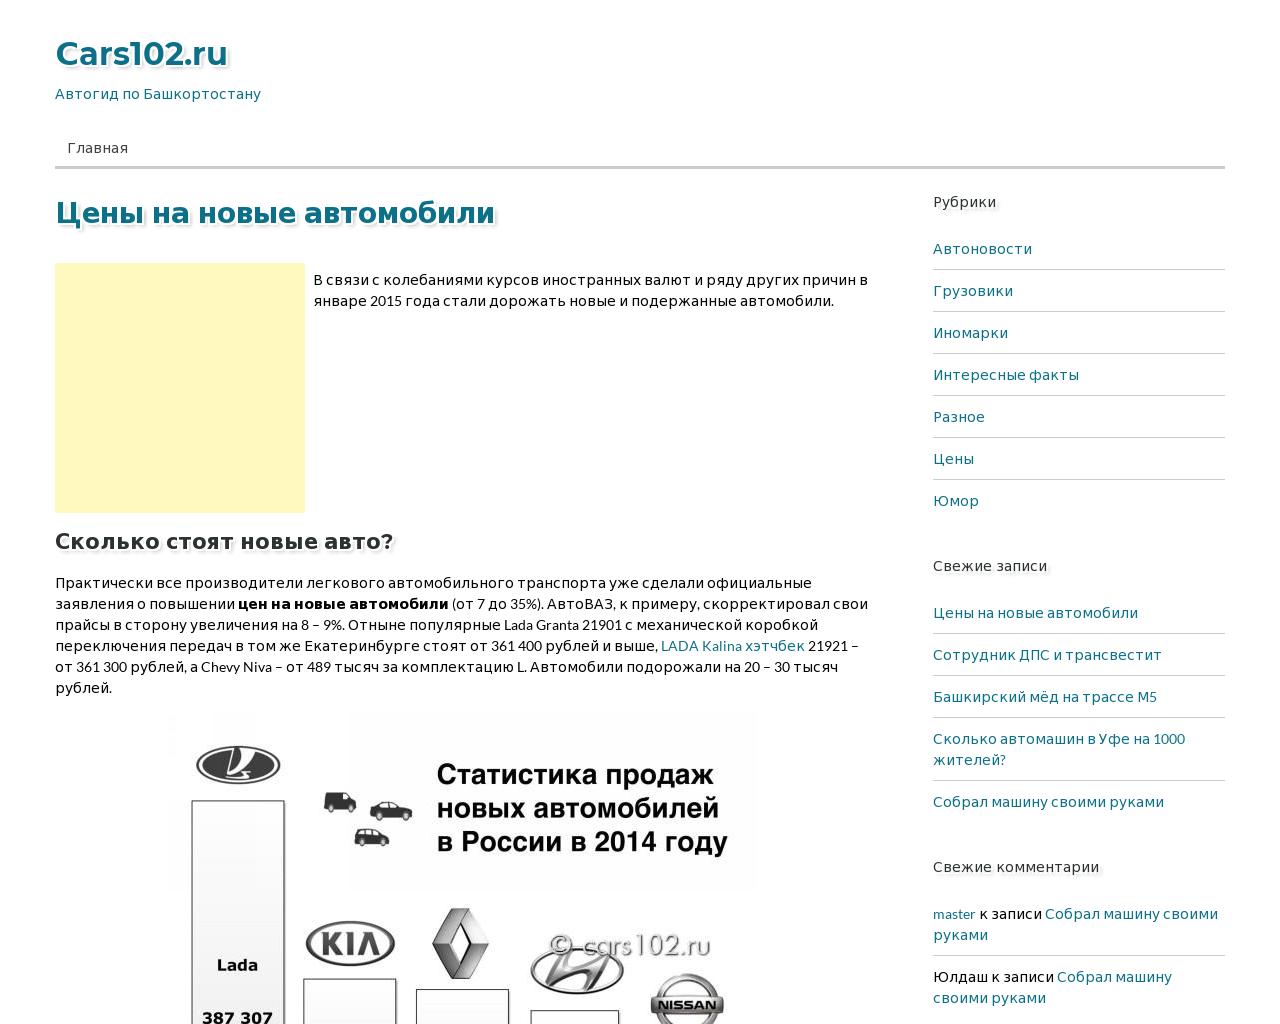 Изображение сайта cars102.ru в разрешении 1280x1024